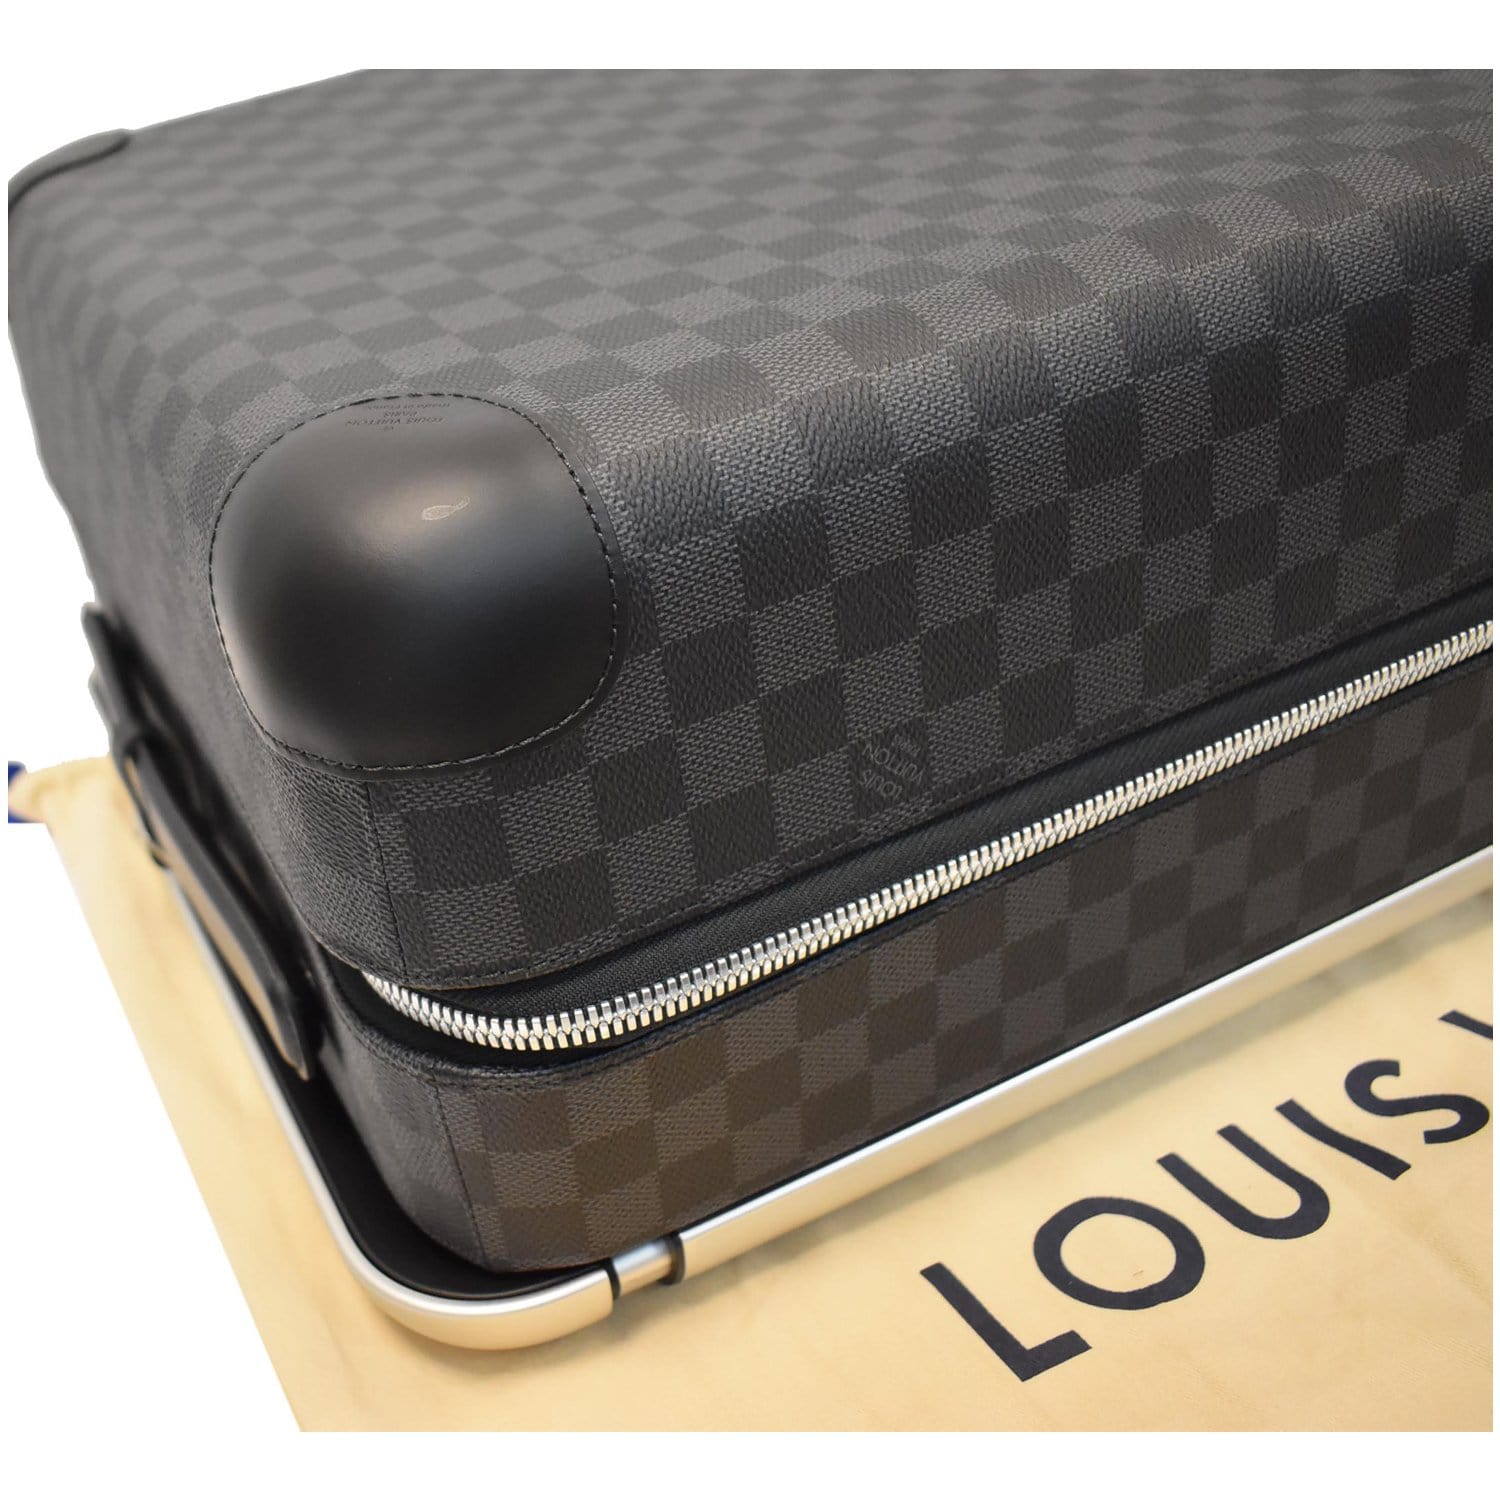 Louis Vuitton Horizon 55 Damier Graphite - Like New - OneLuxury